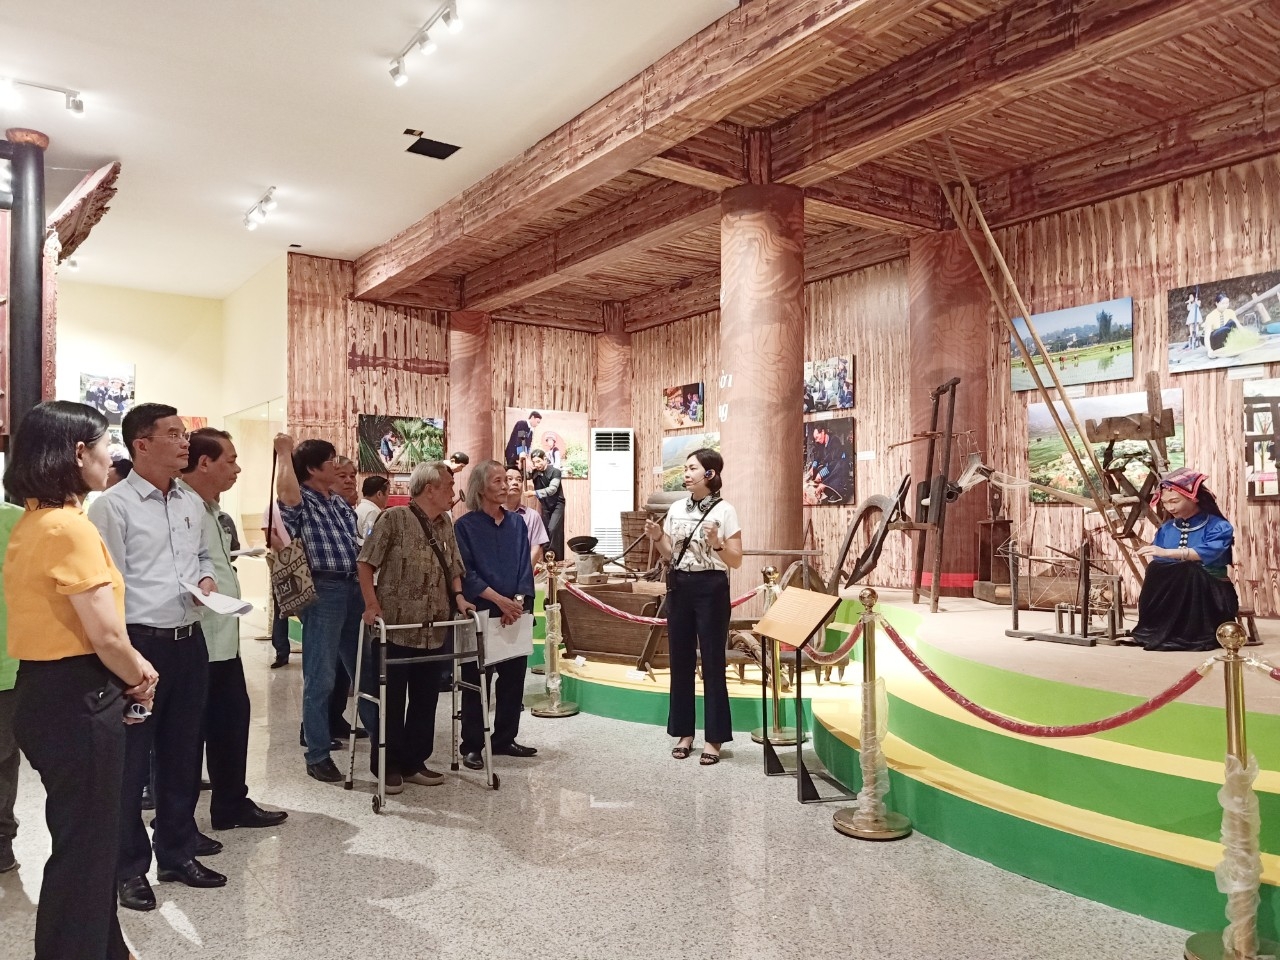 Bảo tàng tỉnh Yên Bái - nơi lưu giữ nhiều tư liệu, hiện vật quý về các dân tộc tỉnh Yên Bái. (Ảnh minh họa)